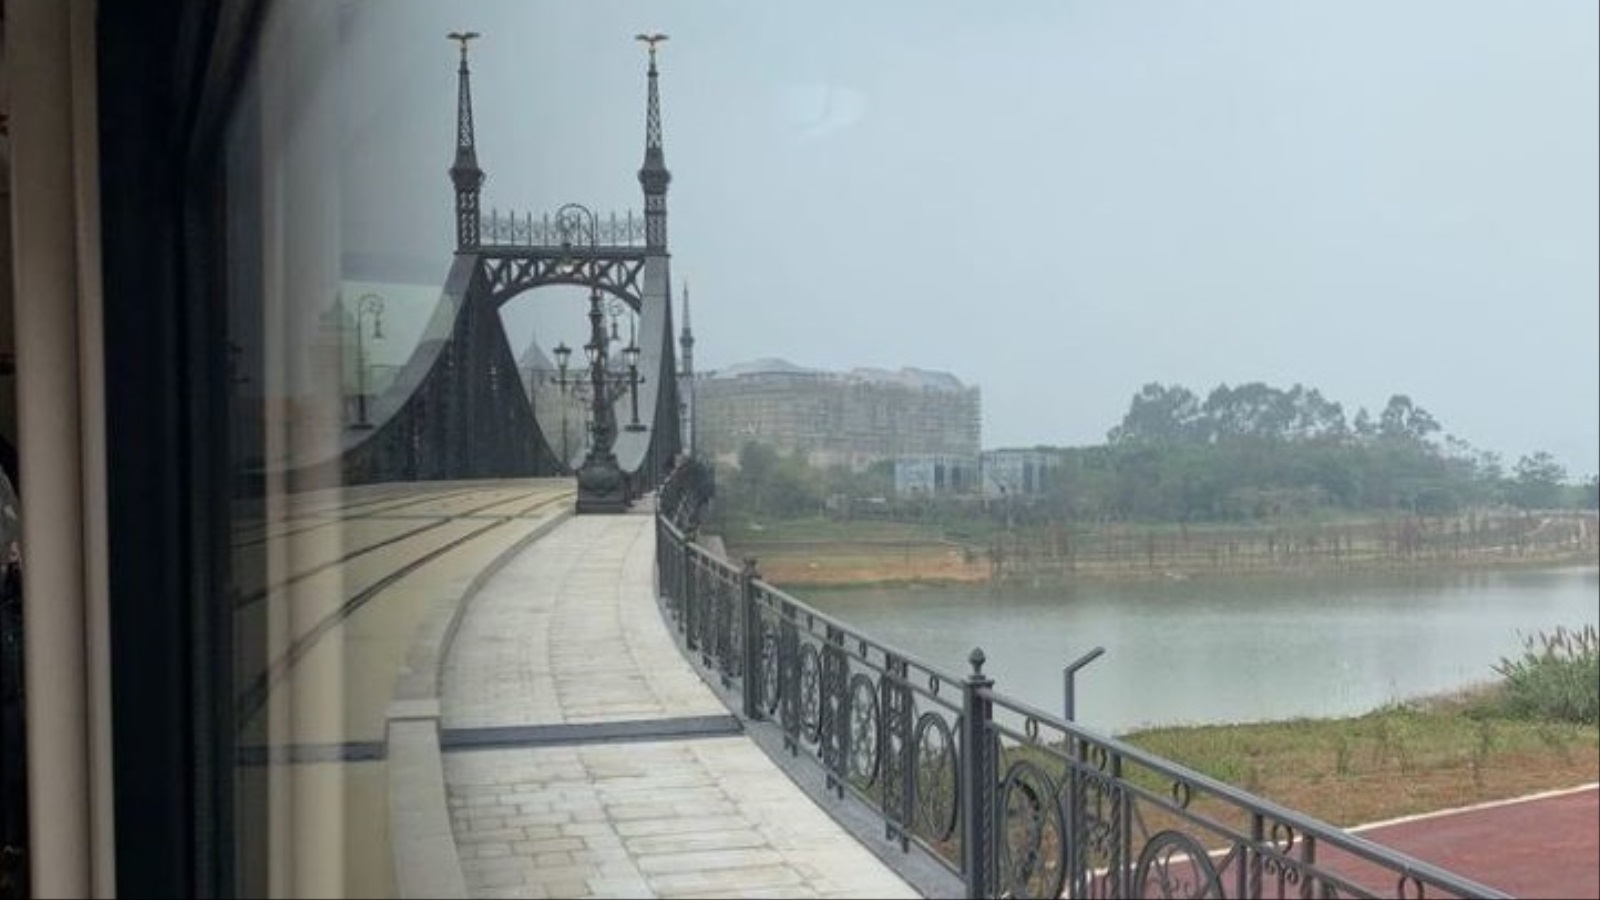 جسر يربط مباني المقر الجديد لهواوي وهو نسخة من جسر الحرية في هنغاريا(رابلر)